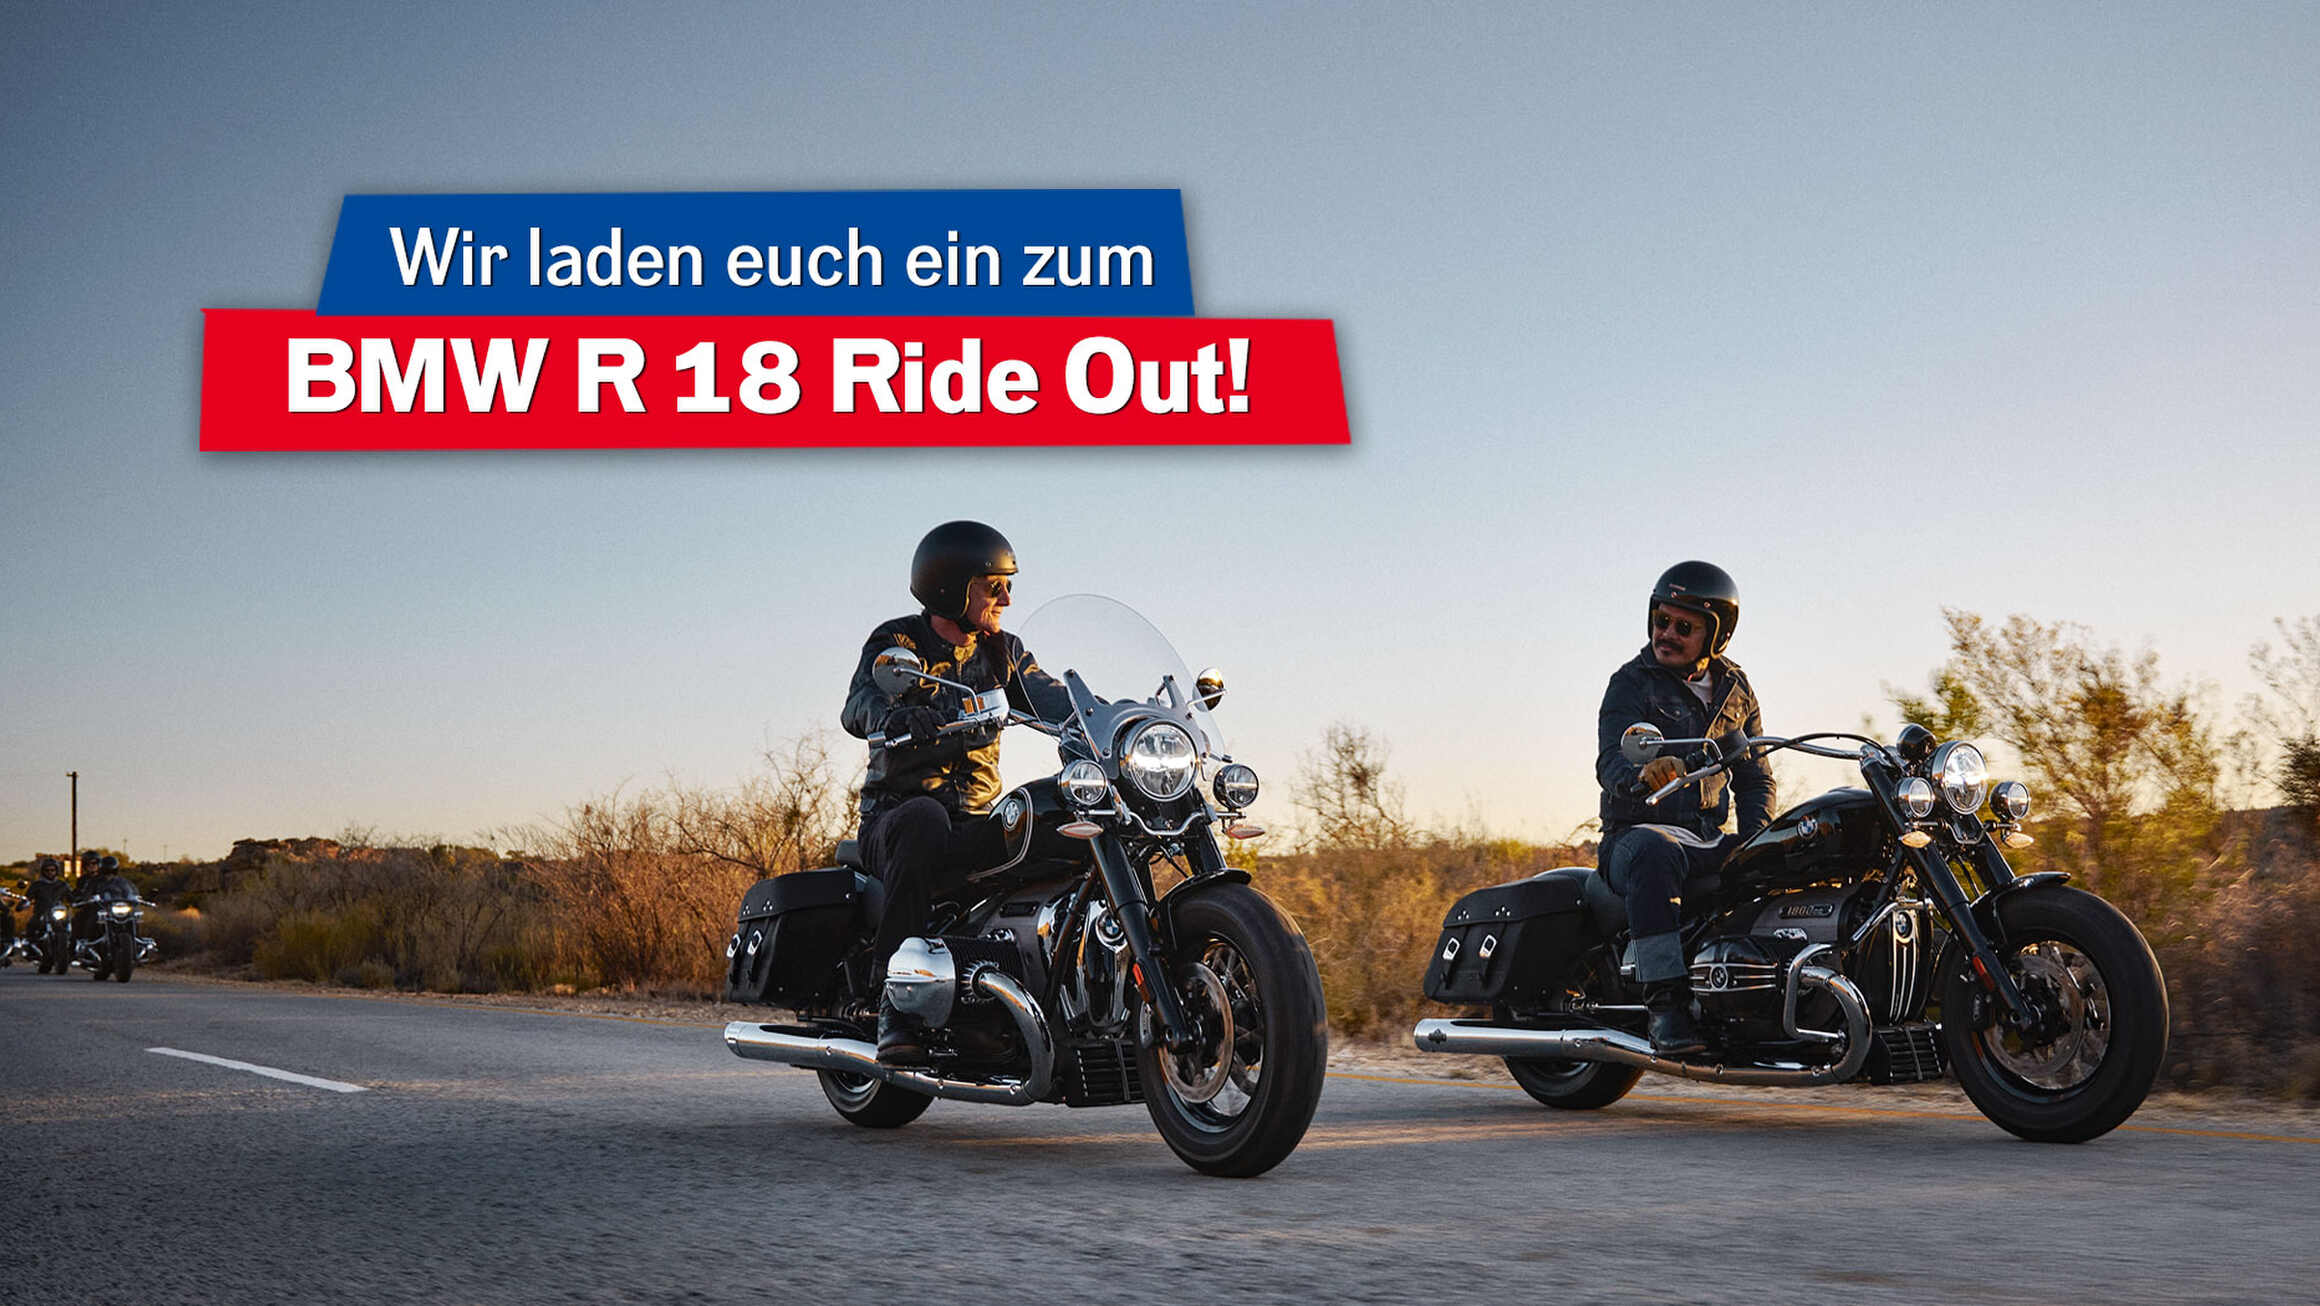 Unser exklusiver BMW R 18 Ride Out am 18.06. - jetzt bewerben!